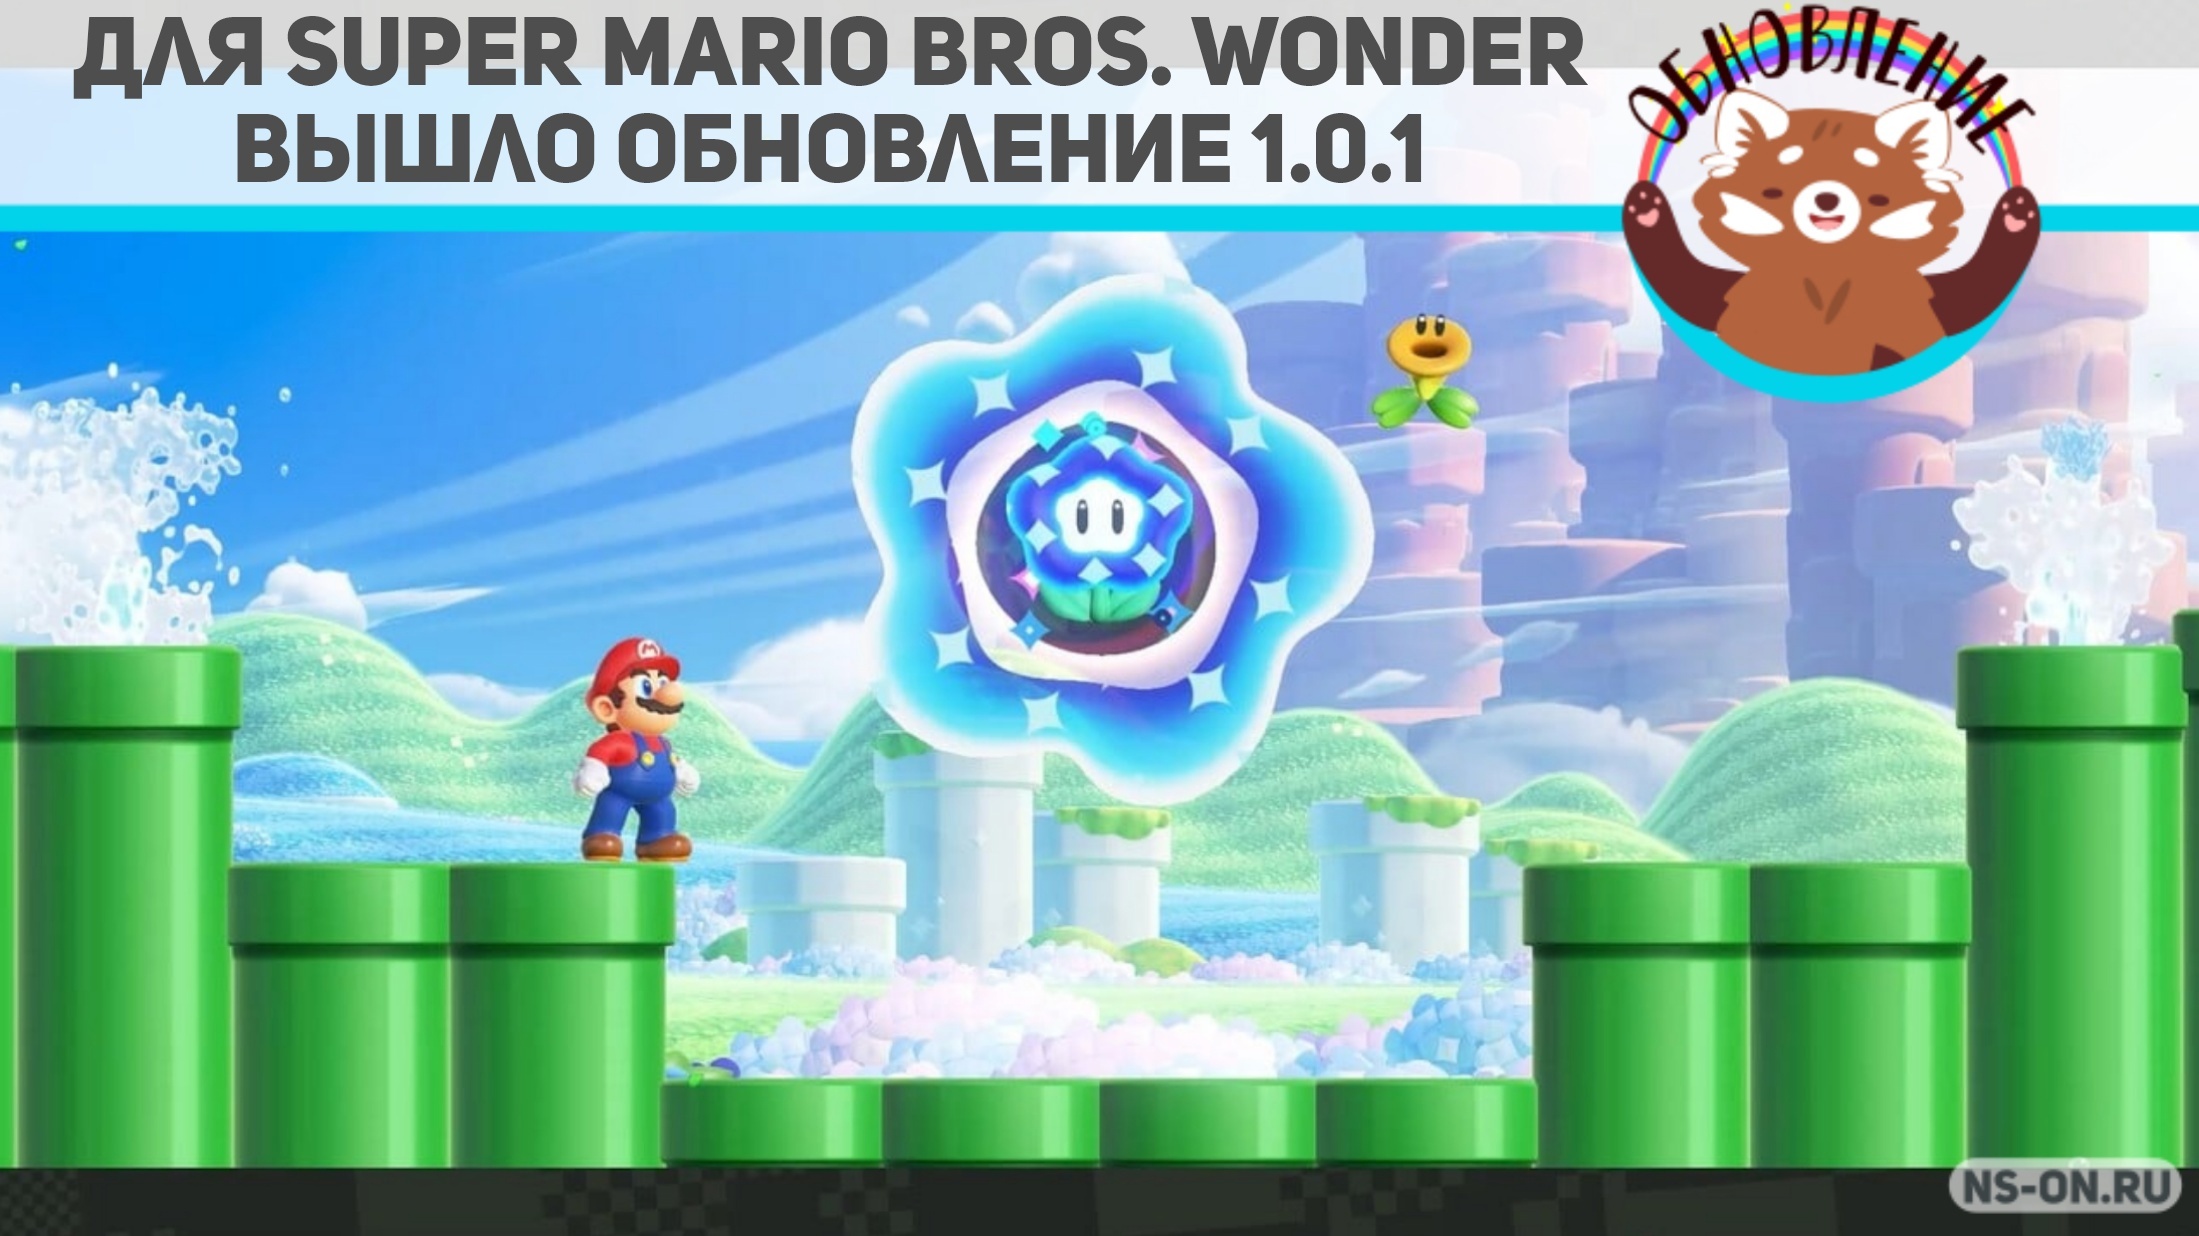 Вы сейчас просматриваете Для Super Mario Bros. Wonder вышло обновление 1.0.1